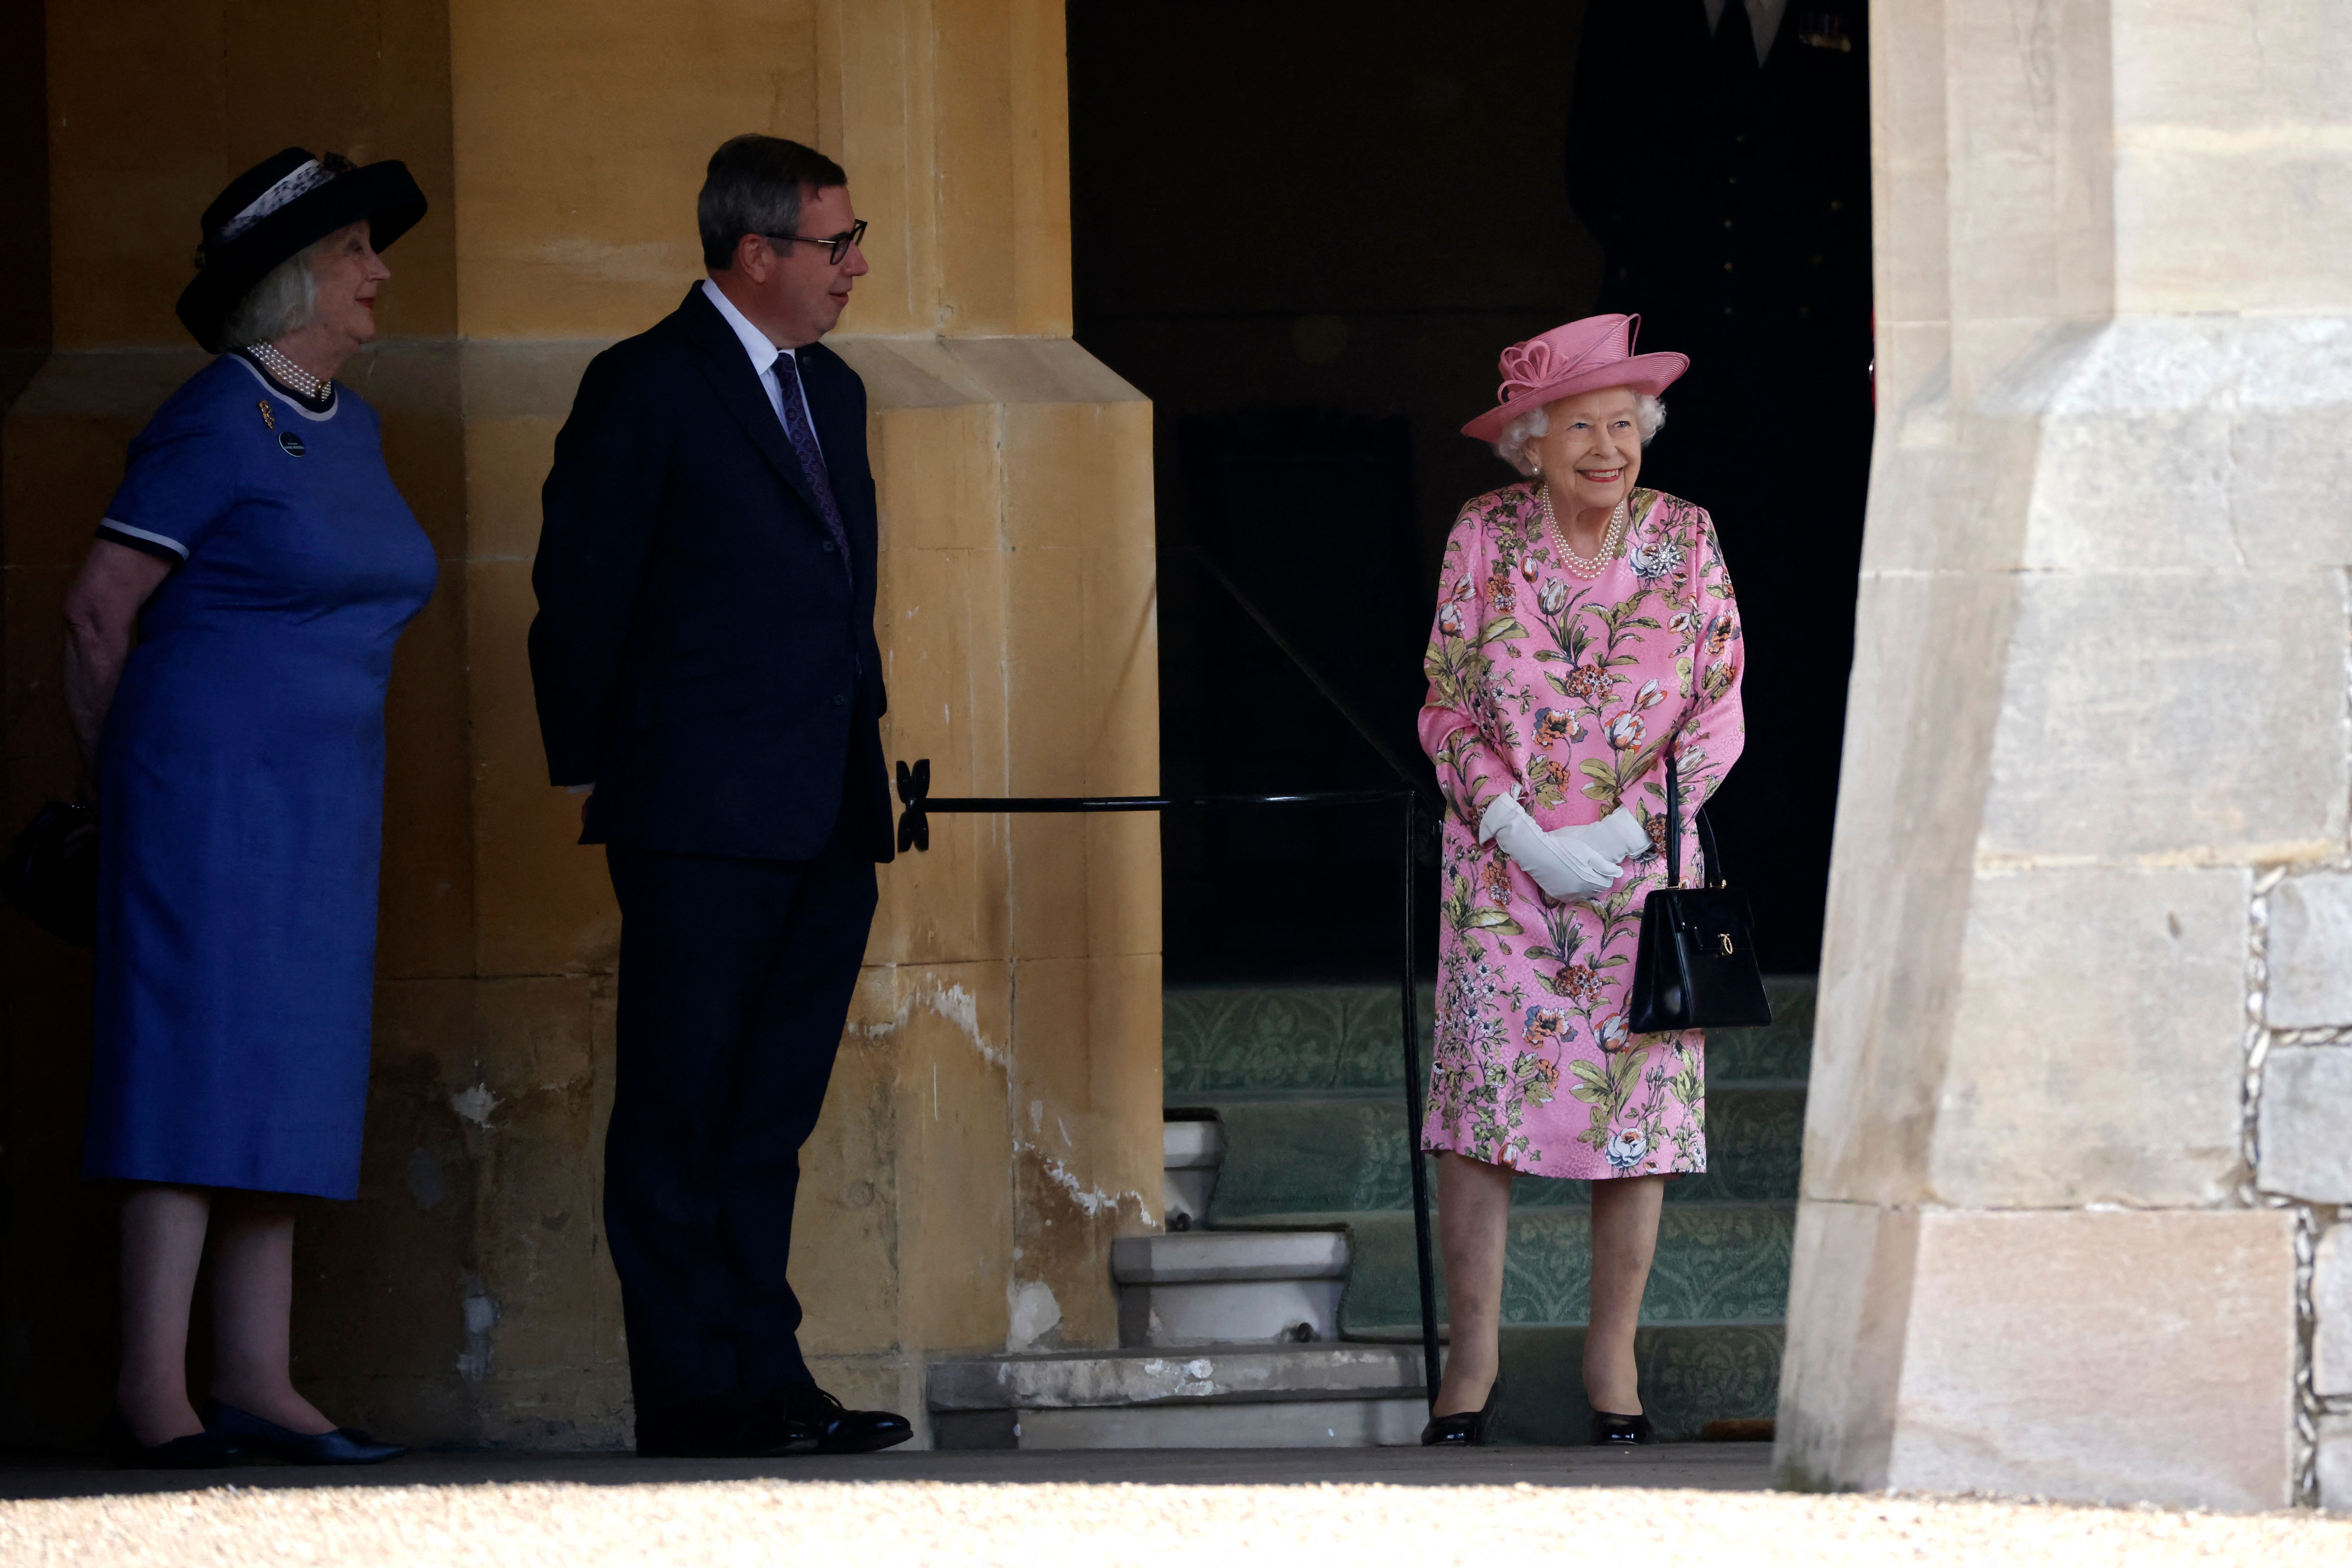 Queen Elizabeth waiting to greet Joe Biden